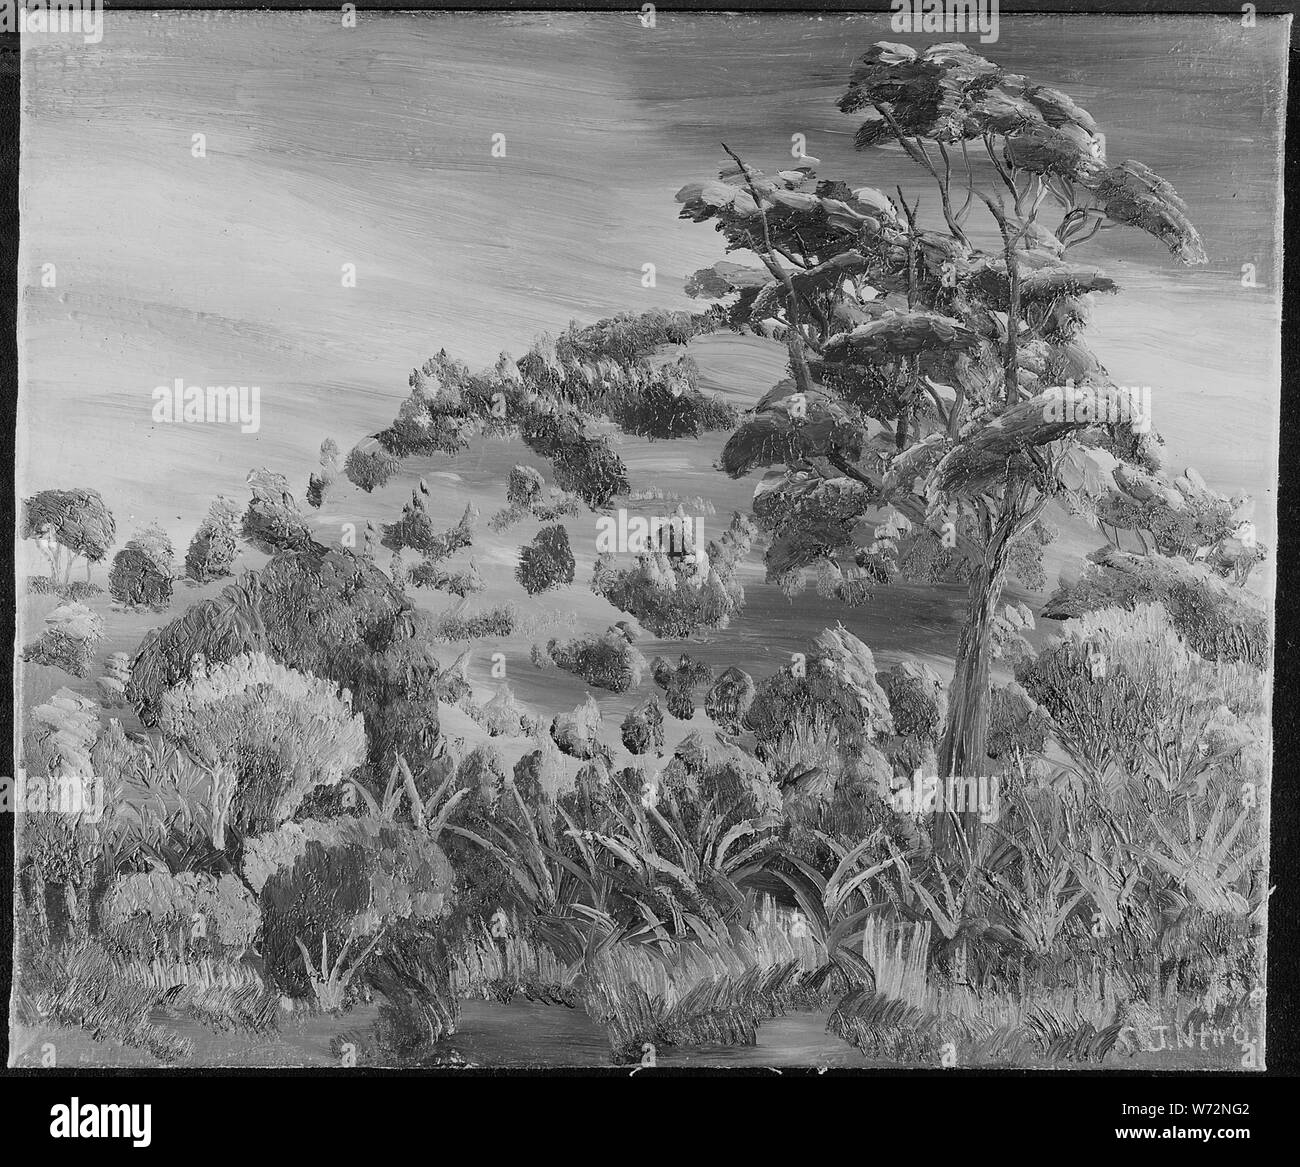 Mango tree Black and White Stock Photos & Images - Alamy